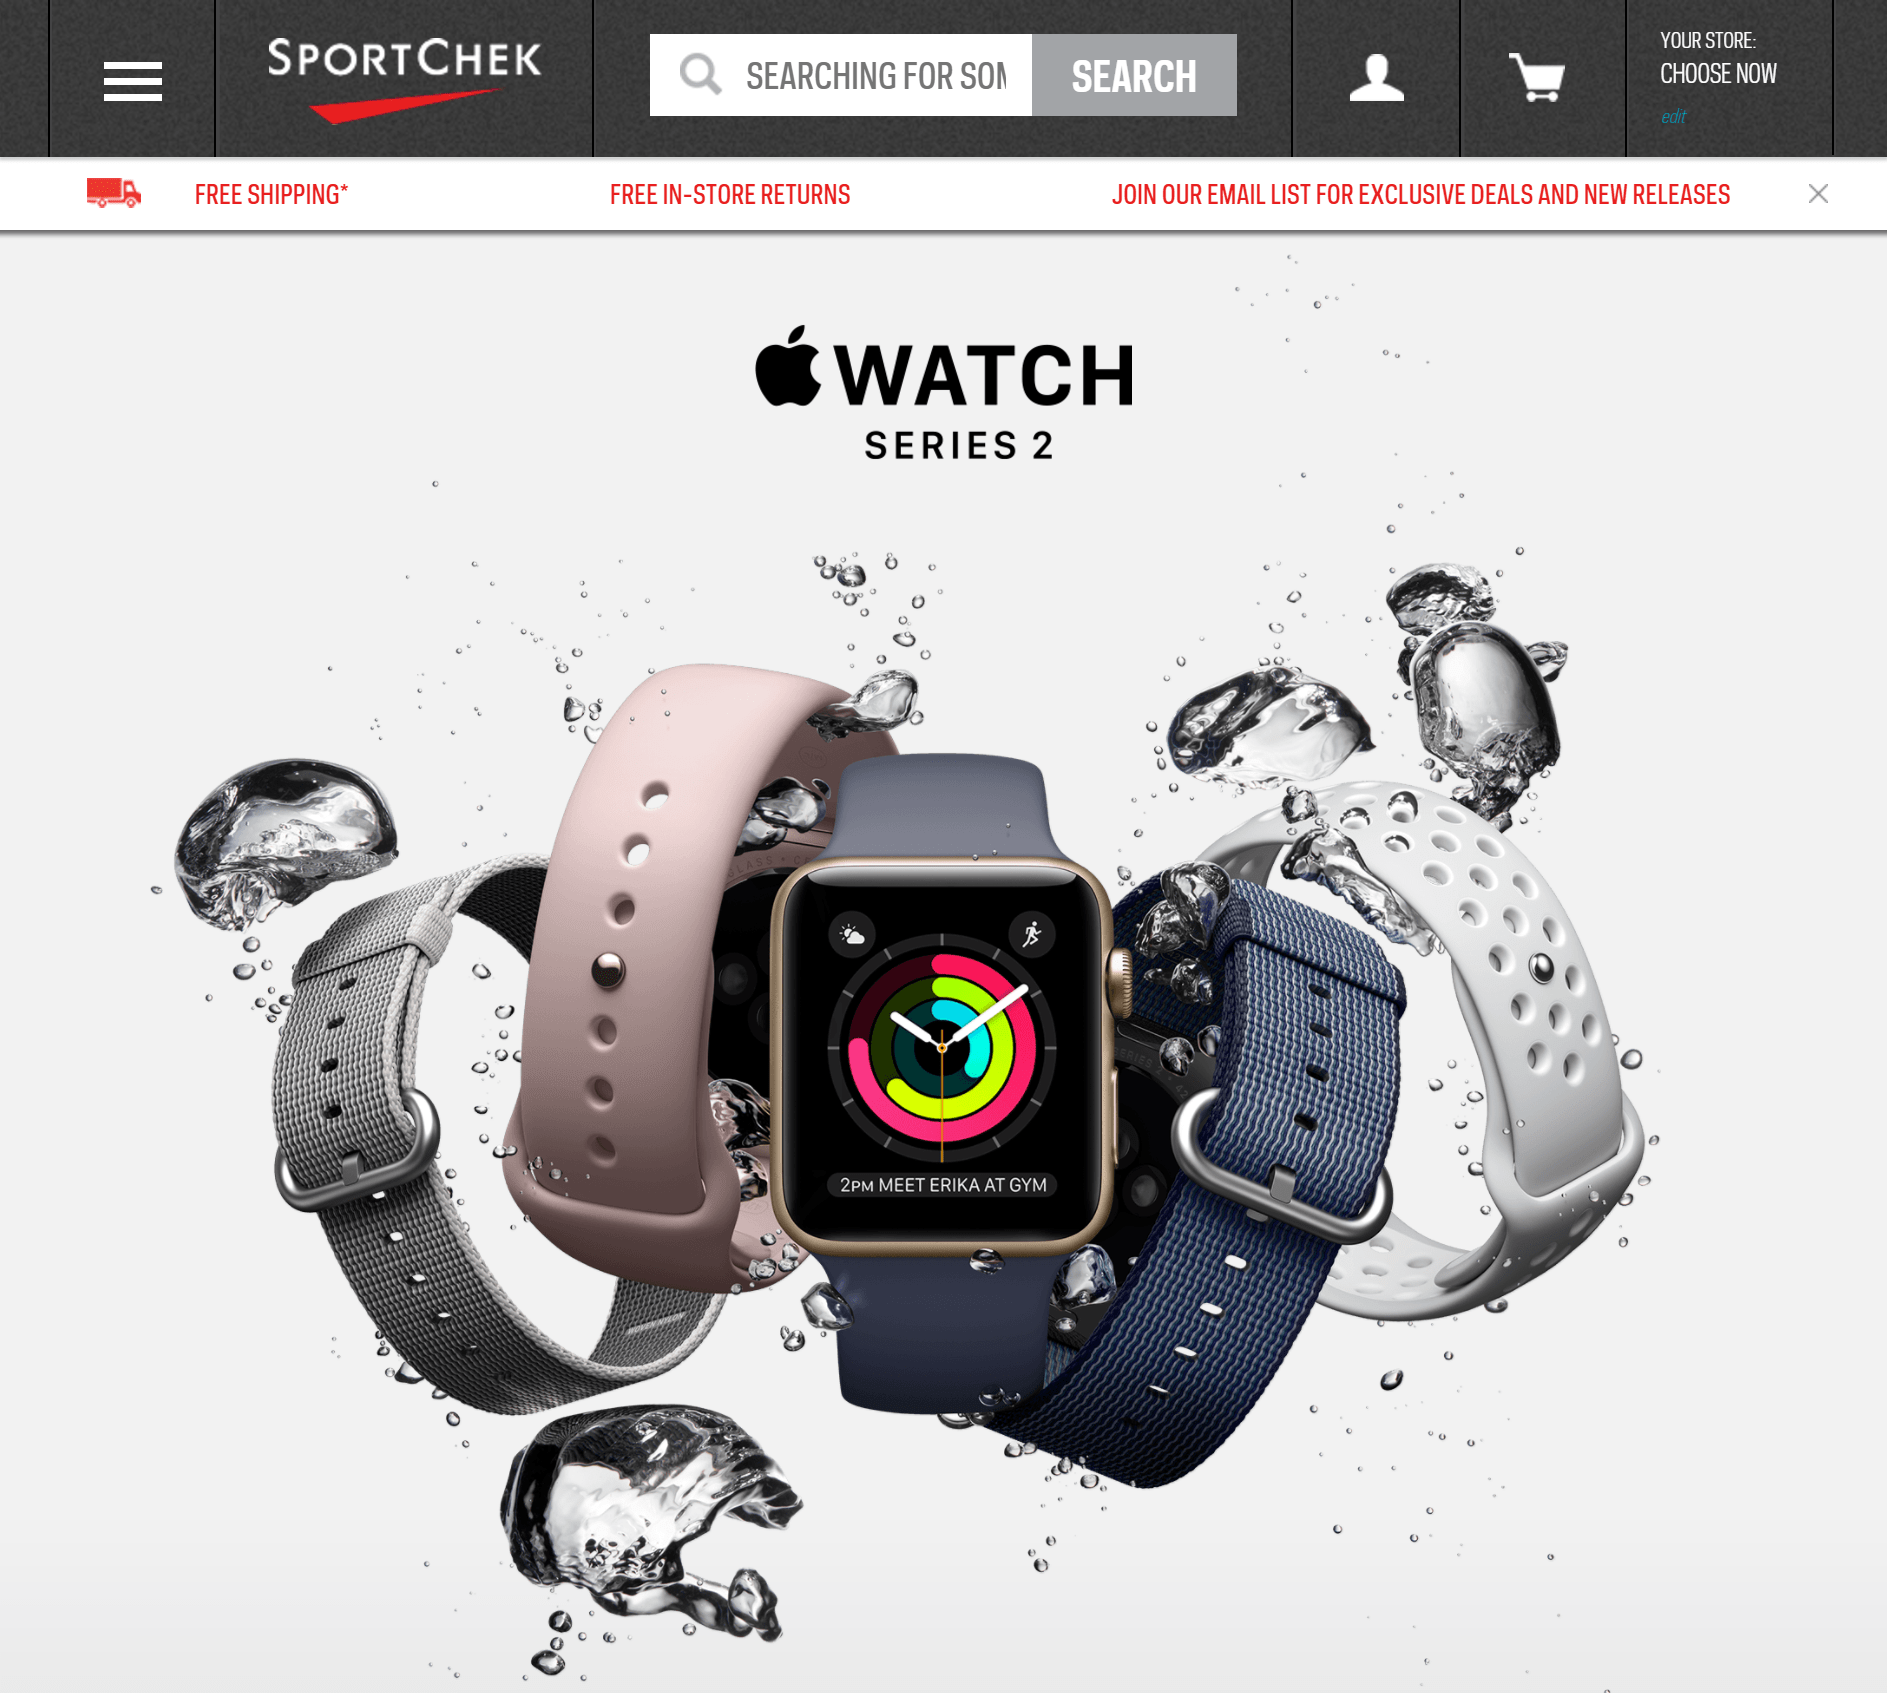 Apple Watch Sport Chek